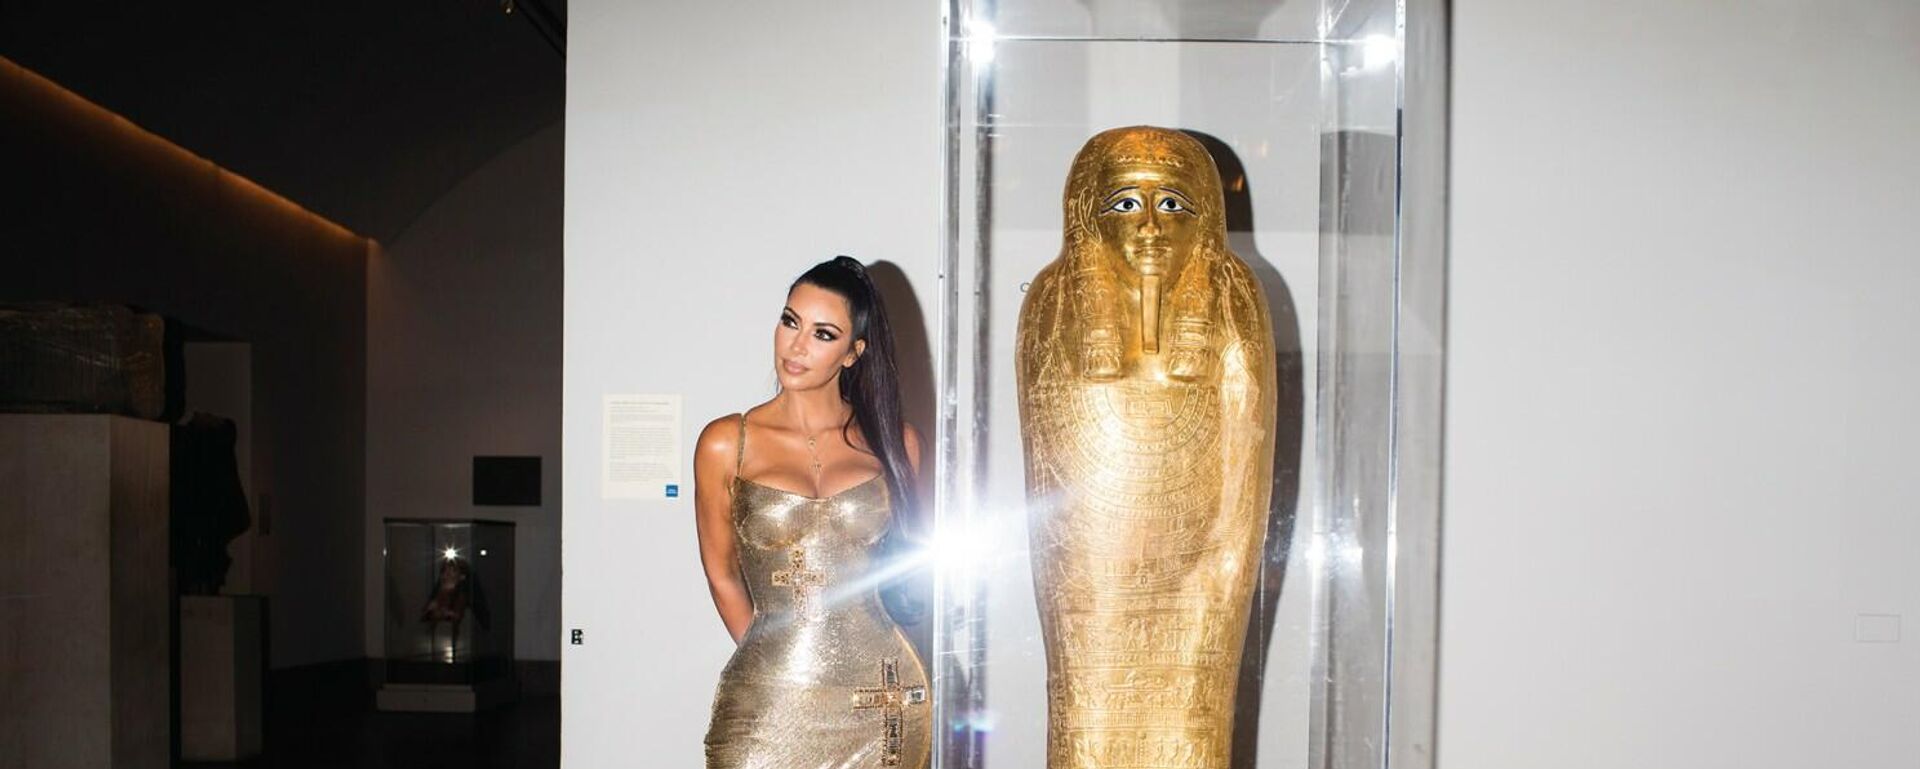 Kim Kardashian'ın pozu, 2 bin 100 yıllık antik tabutu çalanları yakalattı - Sputnik Türkiye, 1920, 20.10.2021